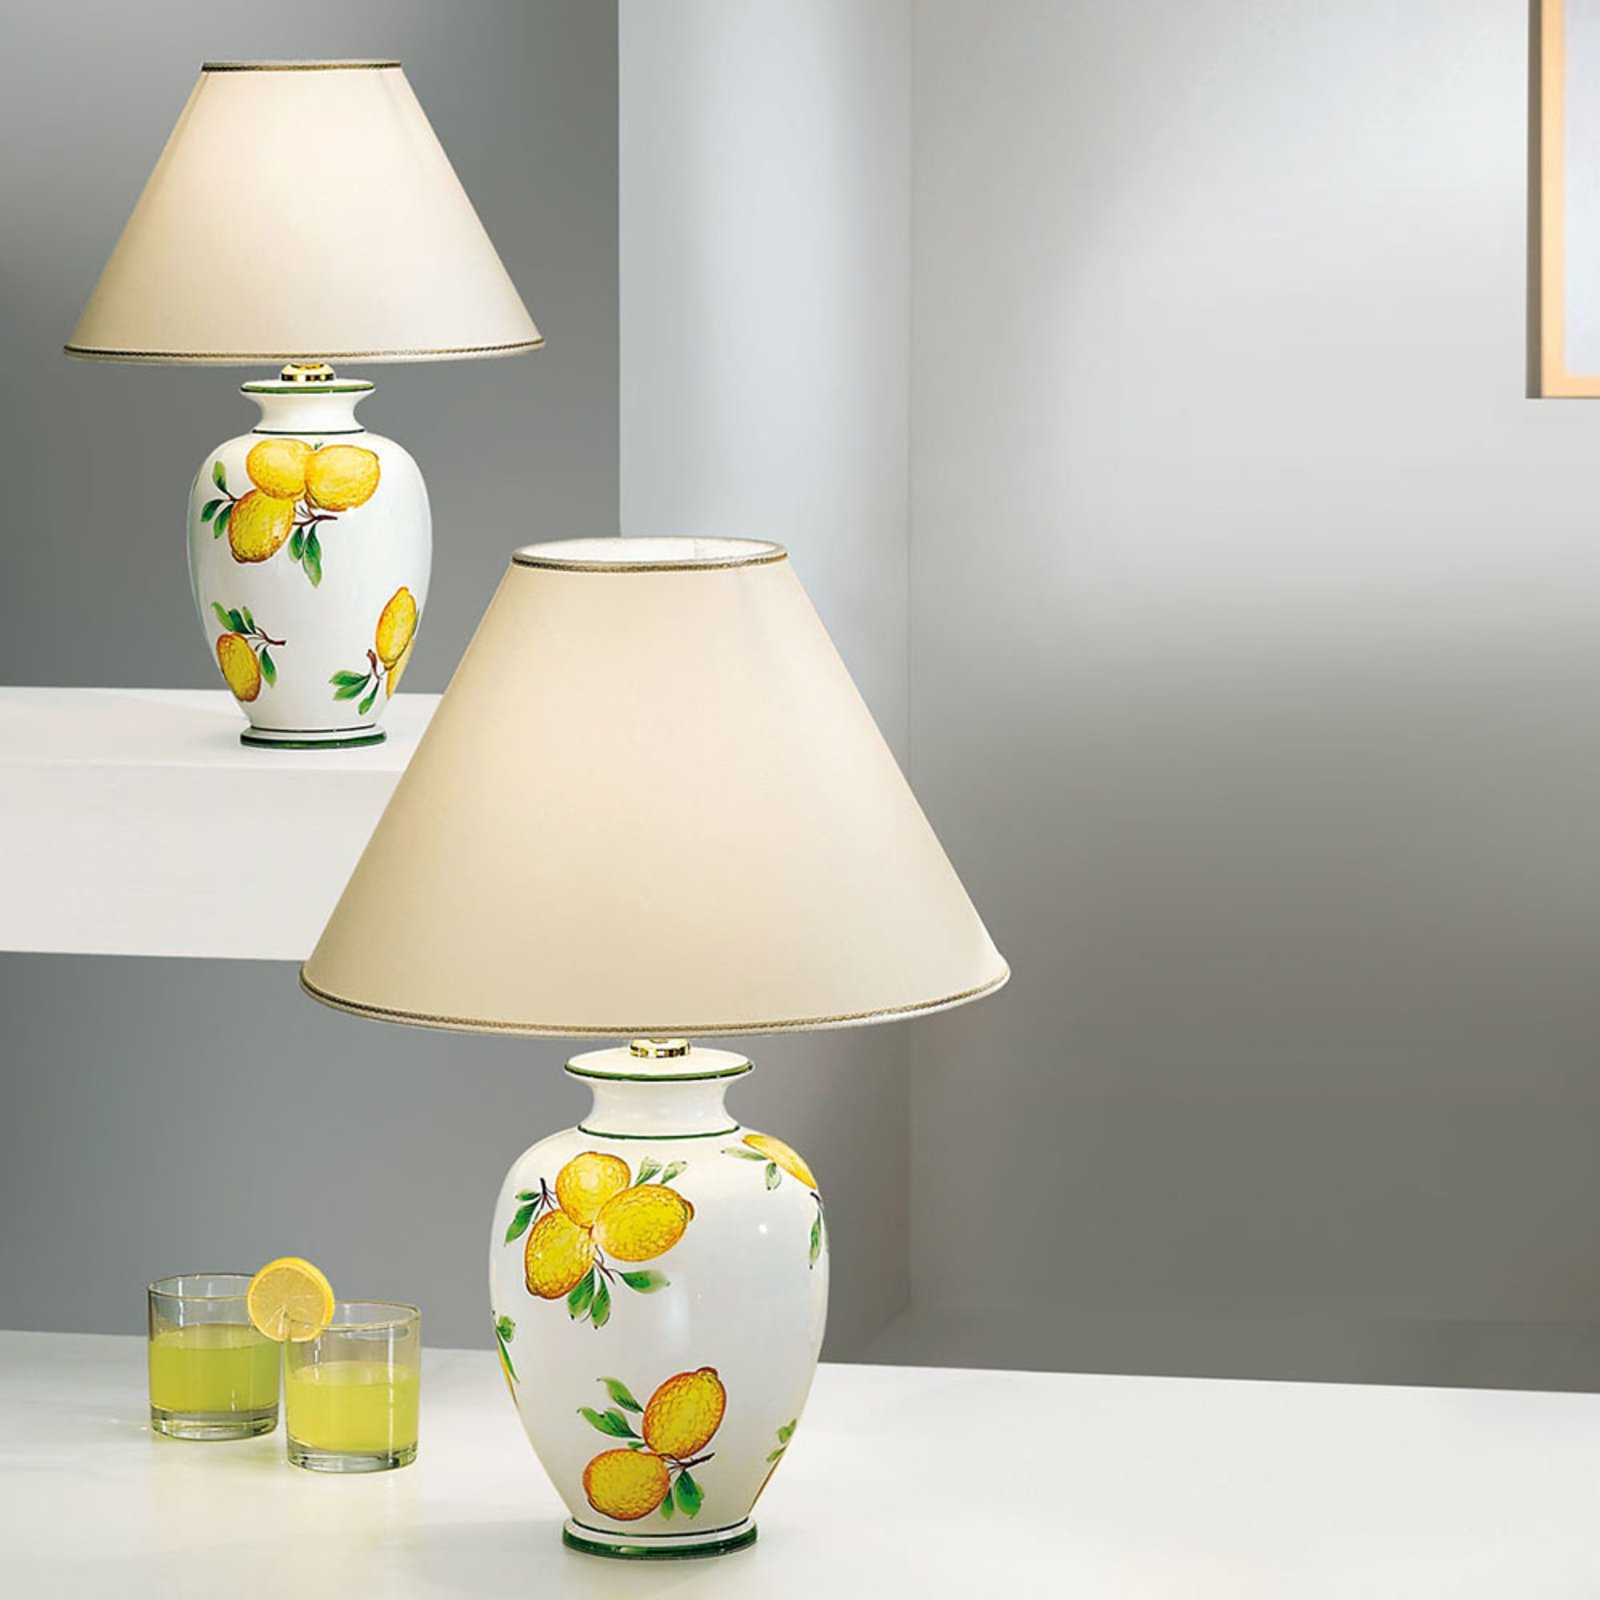 Lampa stołowa Giardino Lemone, Ø 40 cm